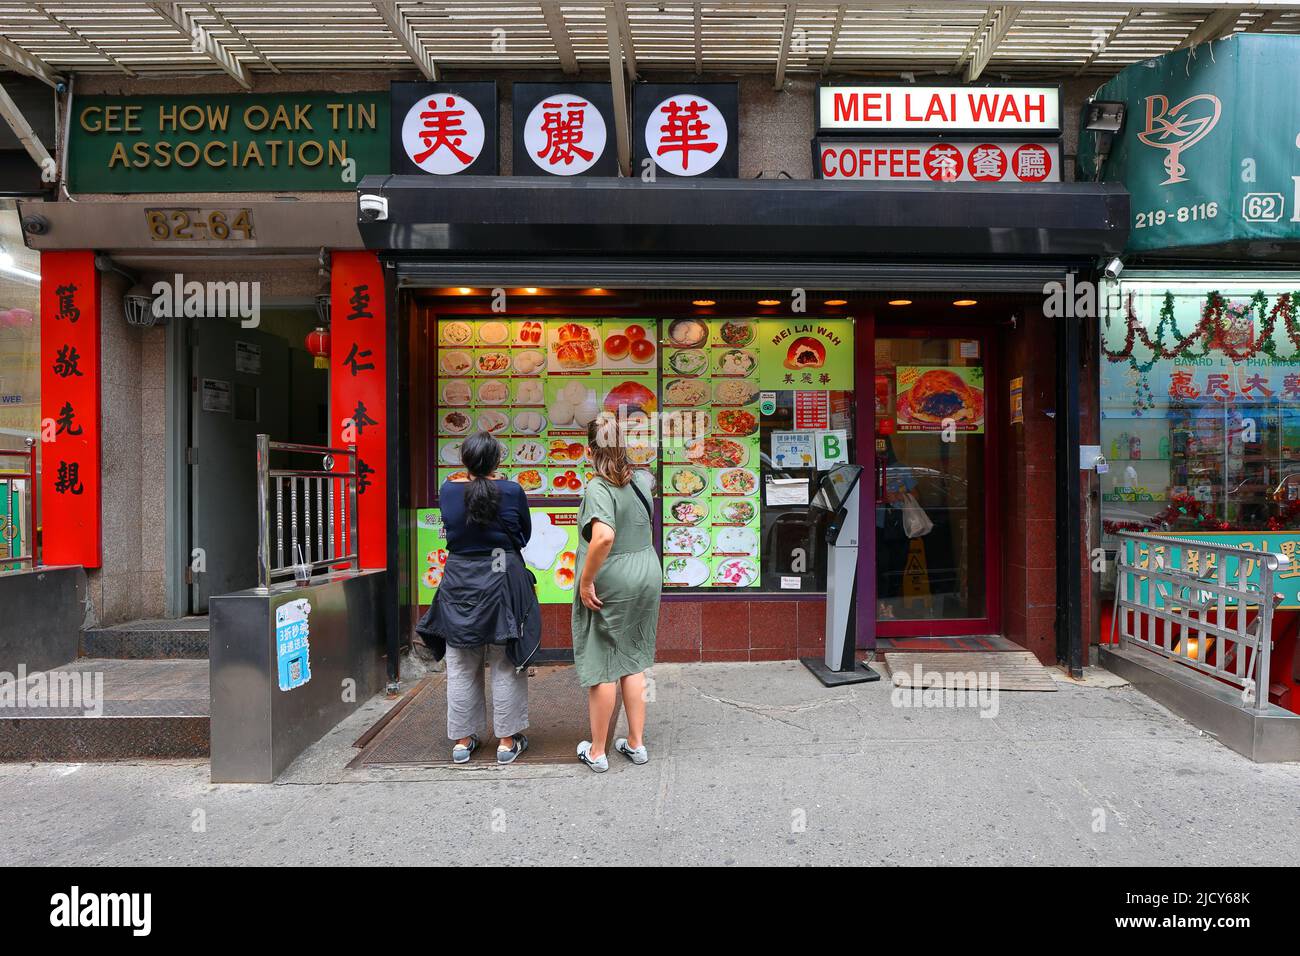 Mei Lai Wah 美麗華, 64 Bayard St, Nueva York, NY. Escaparate exterior de una panadería China y cafetería en Manhattan Chinatown. Foto de stock